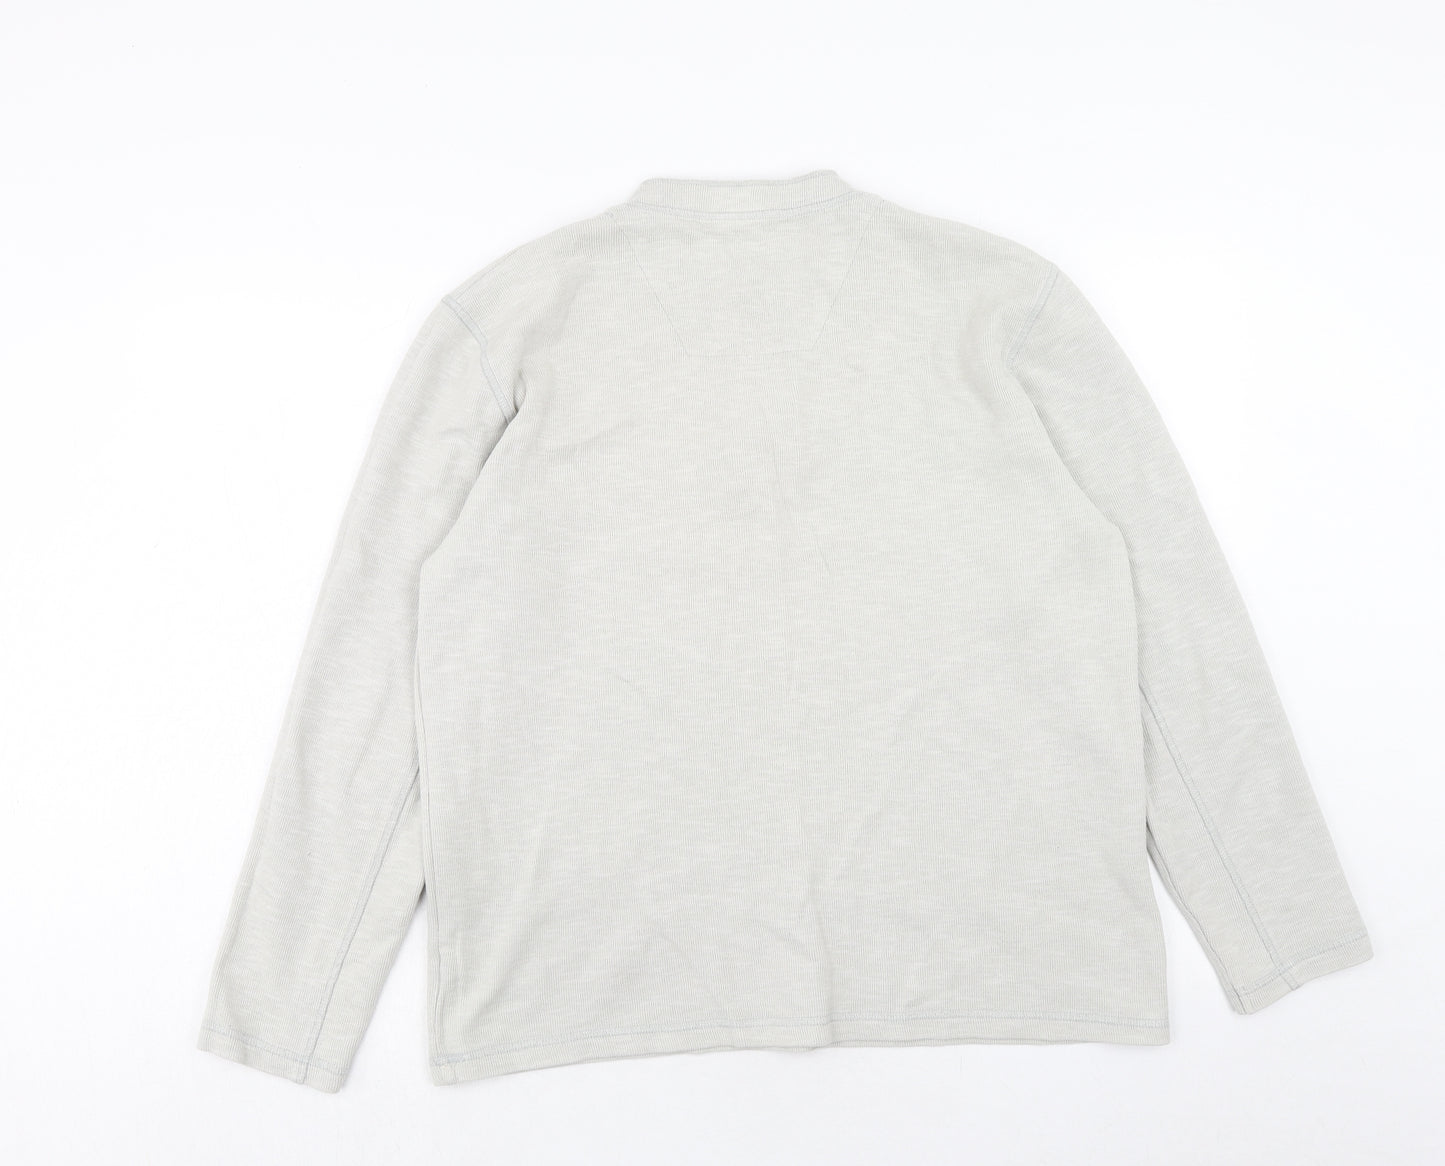 NEXT Mens Beige Cotton Pullover Sweatshirt Size L